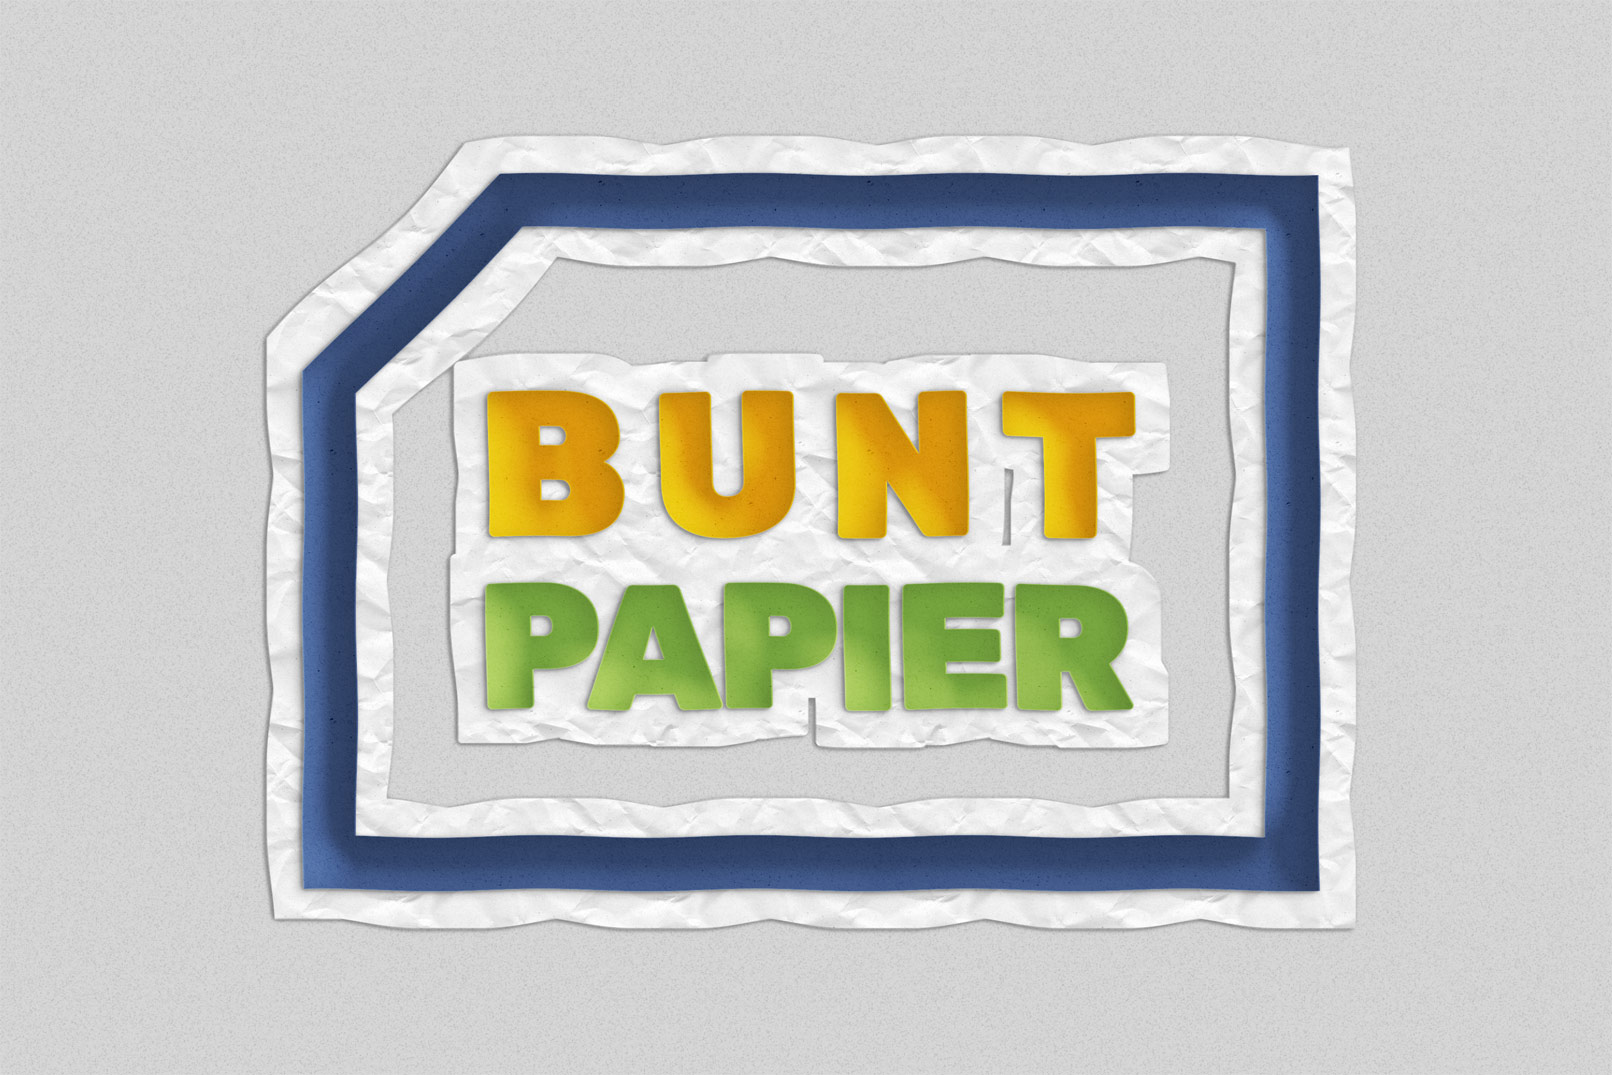 Pappkarton & Buntpapier: Papierschnitt-Effekte für Photoshop